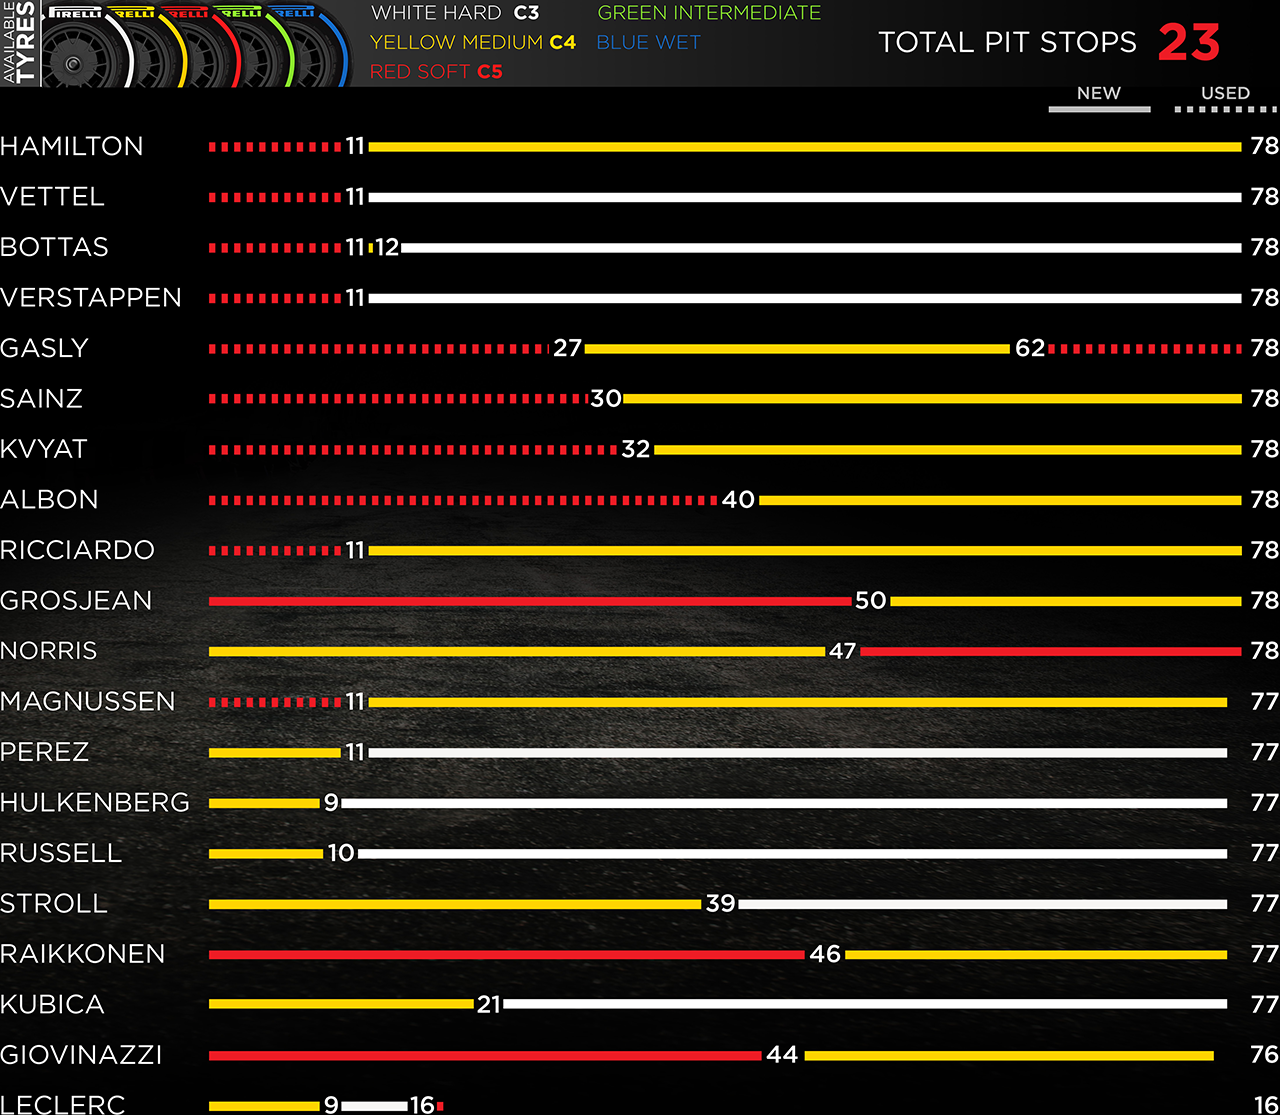 Grafický přehled pneumatikových strategií GP Monaka 2019